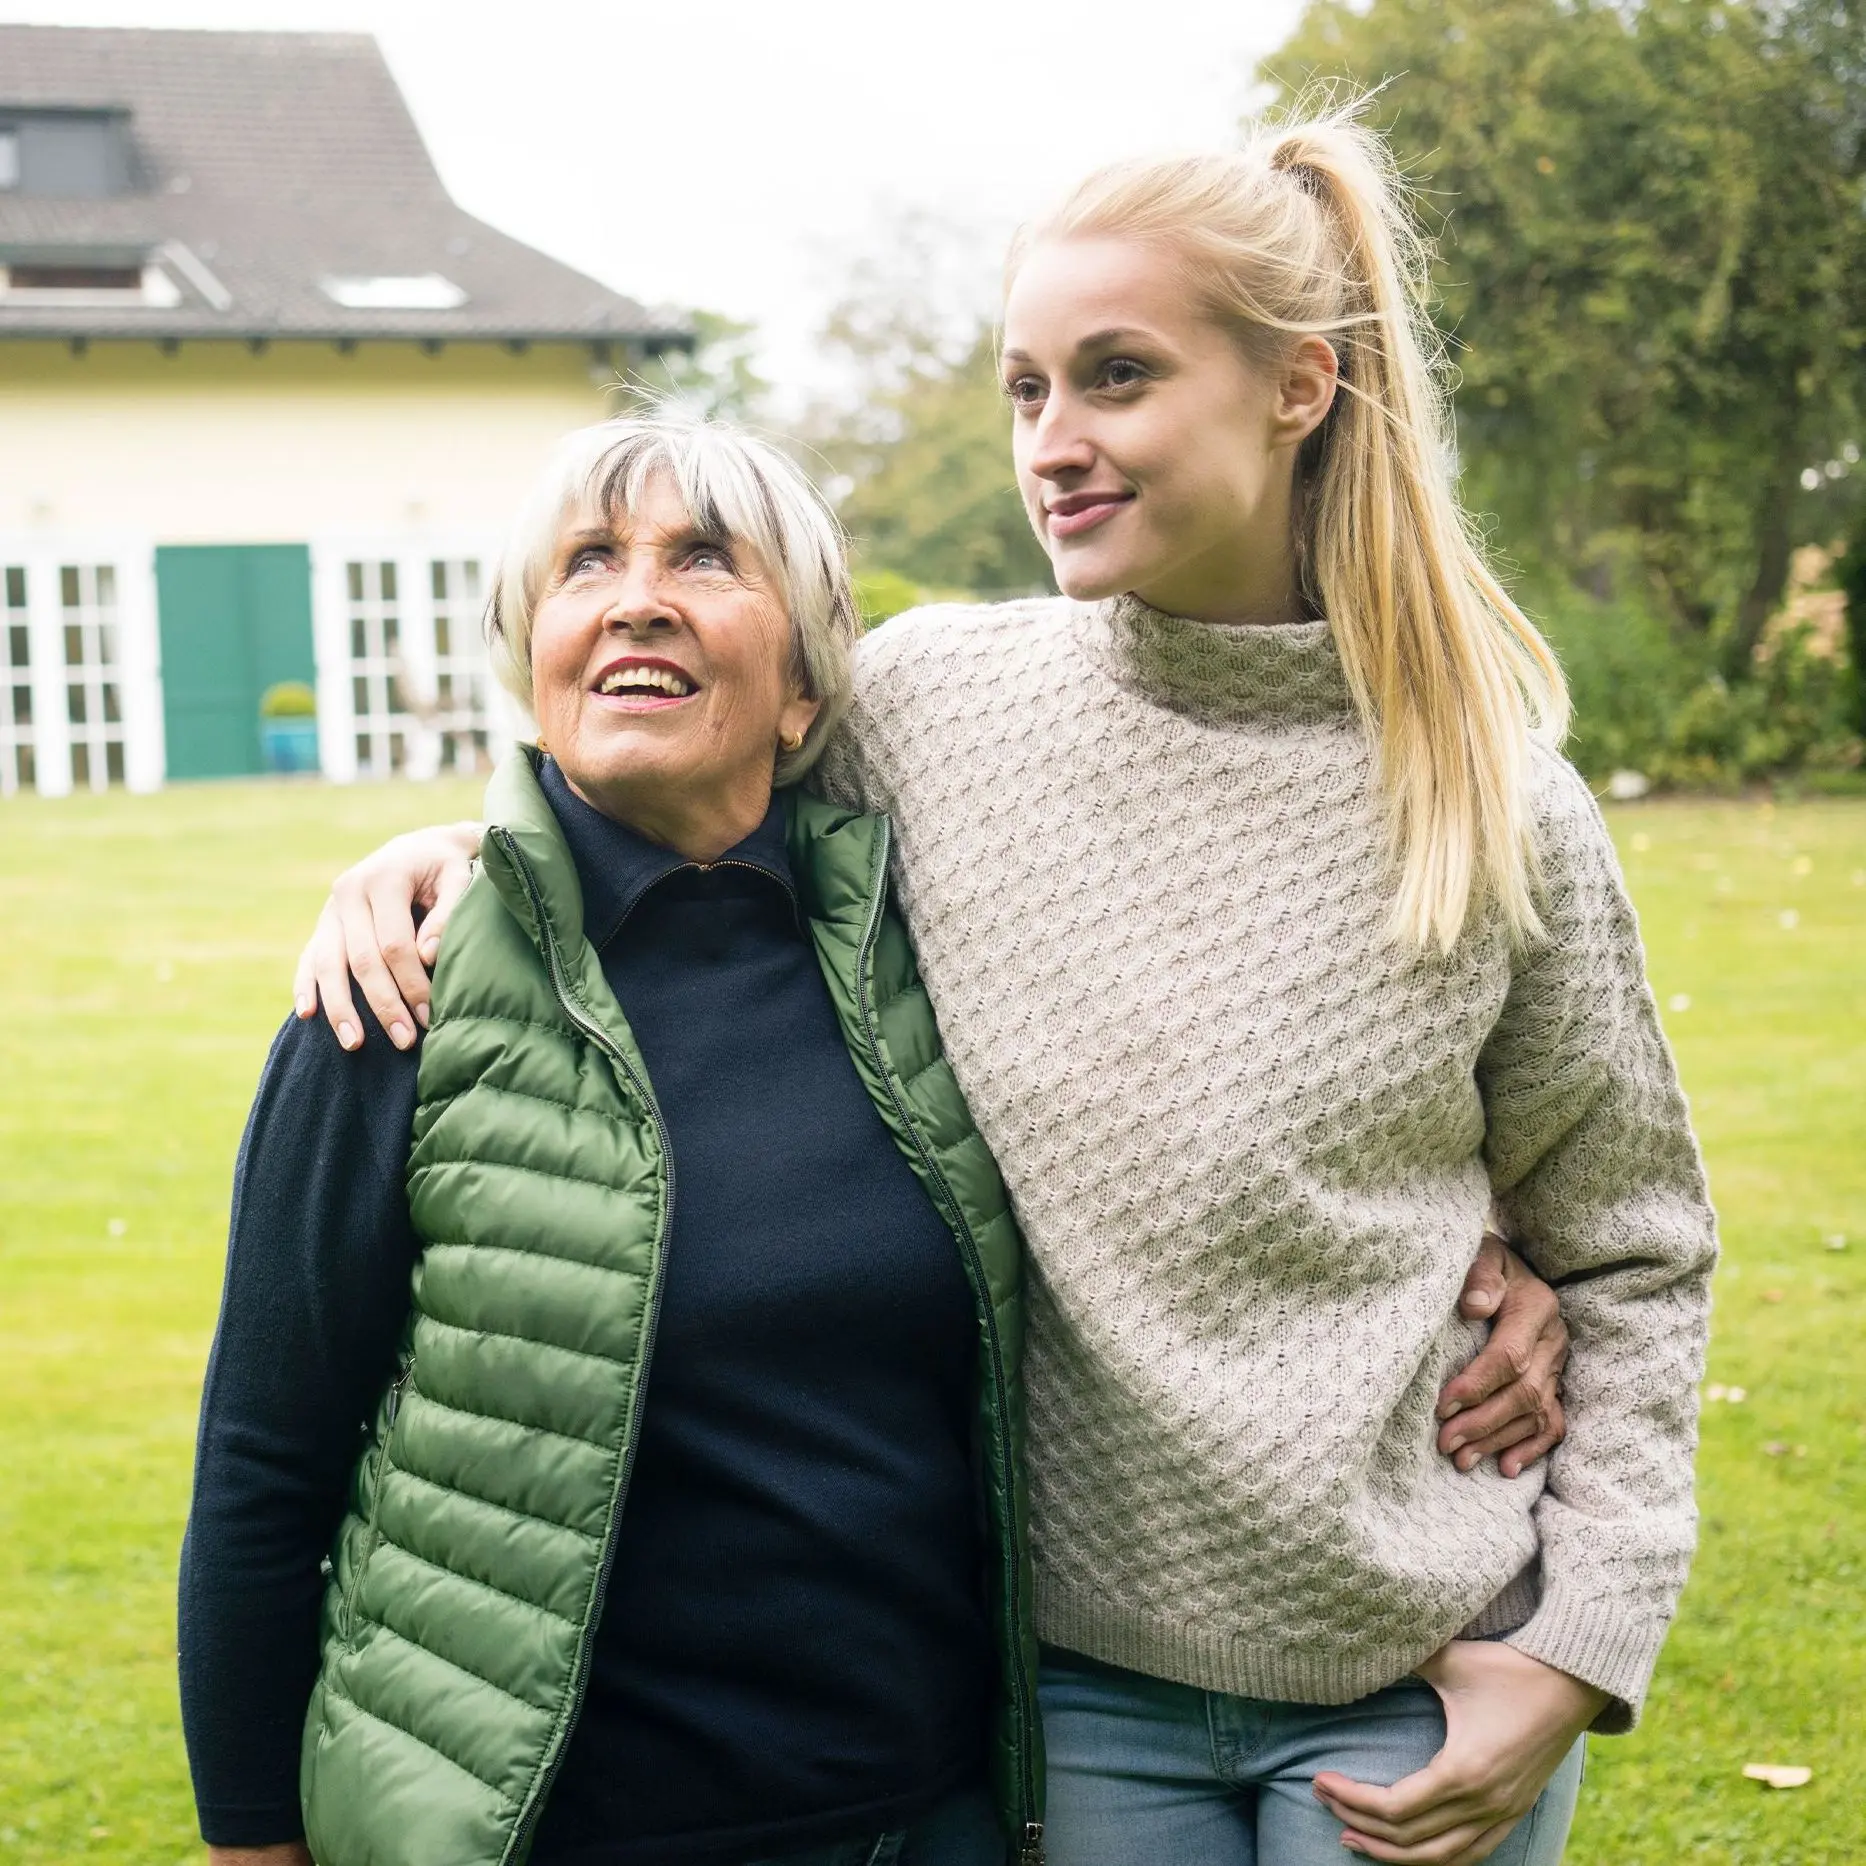 Eine junge Frau mit langem blonden Pferdeschwanz legt ihren Arm um ihre Großmutter. Sie stehen auf der Wiese eines Grundstücks. Im Hintergrund steht ein schönes altes Wohnhaus. Beide lächeln.